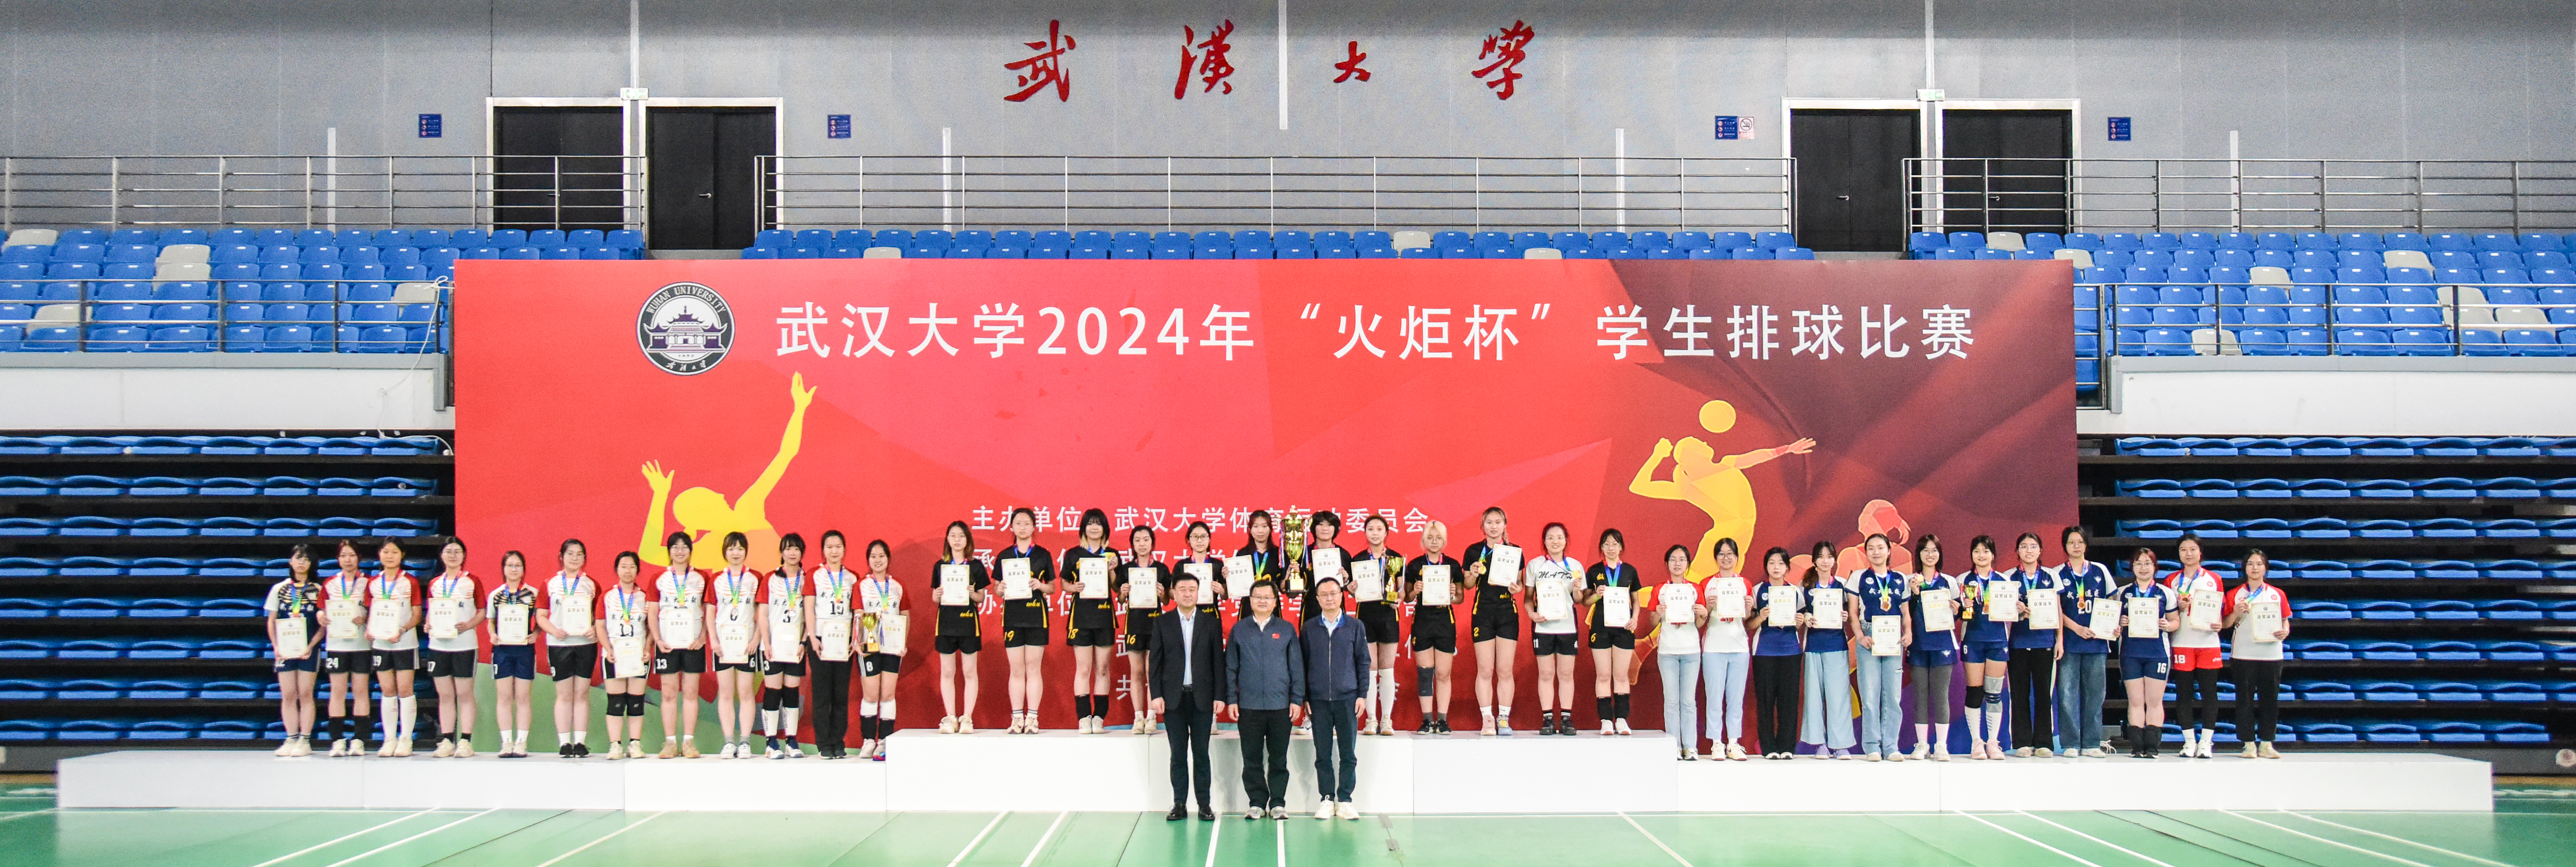 武汉大学2024年“火炬杯”学生排球赛圆满落幕